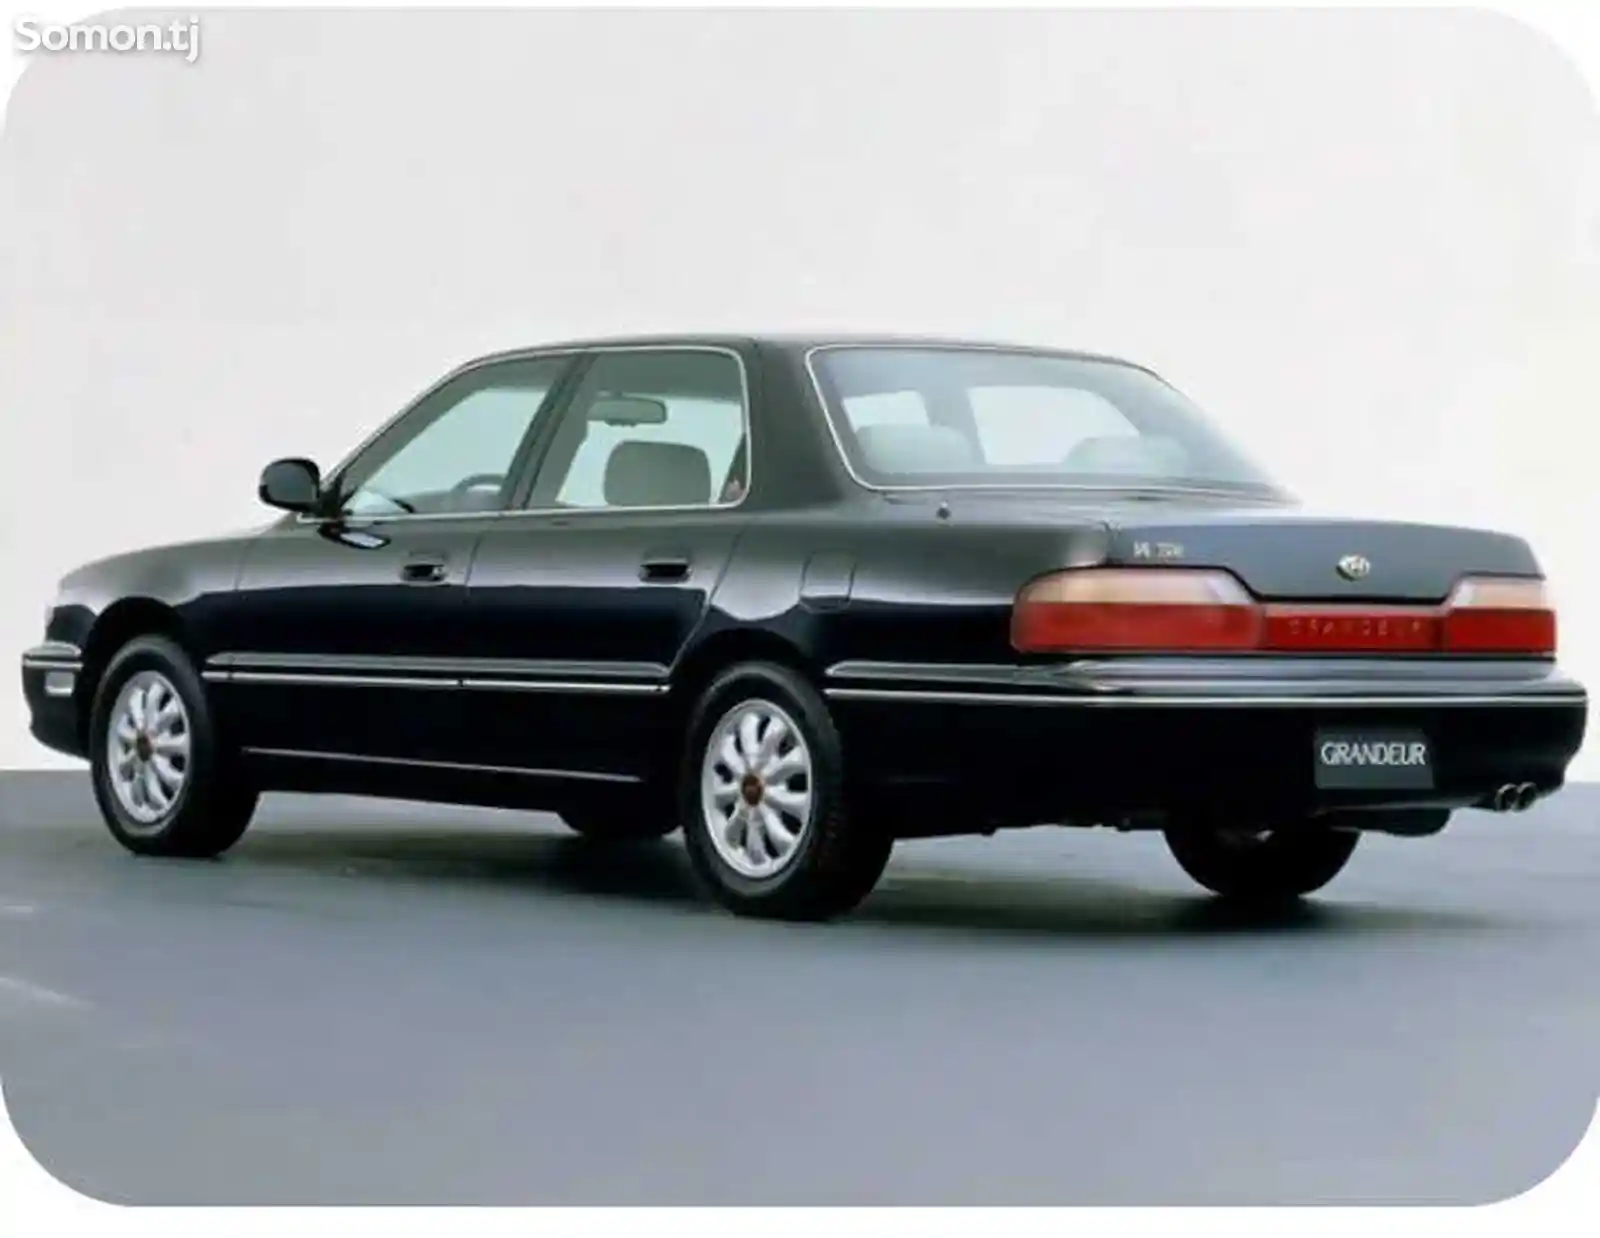 Hyundai Grandeur, 1992-2